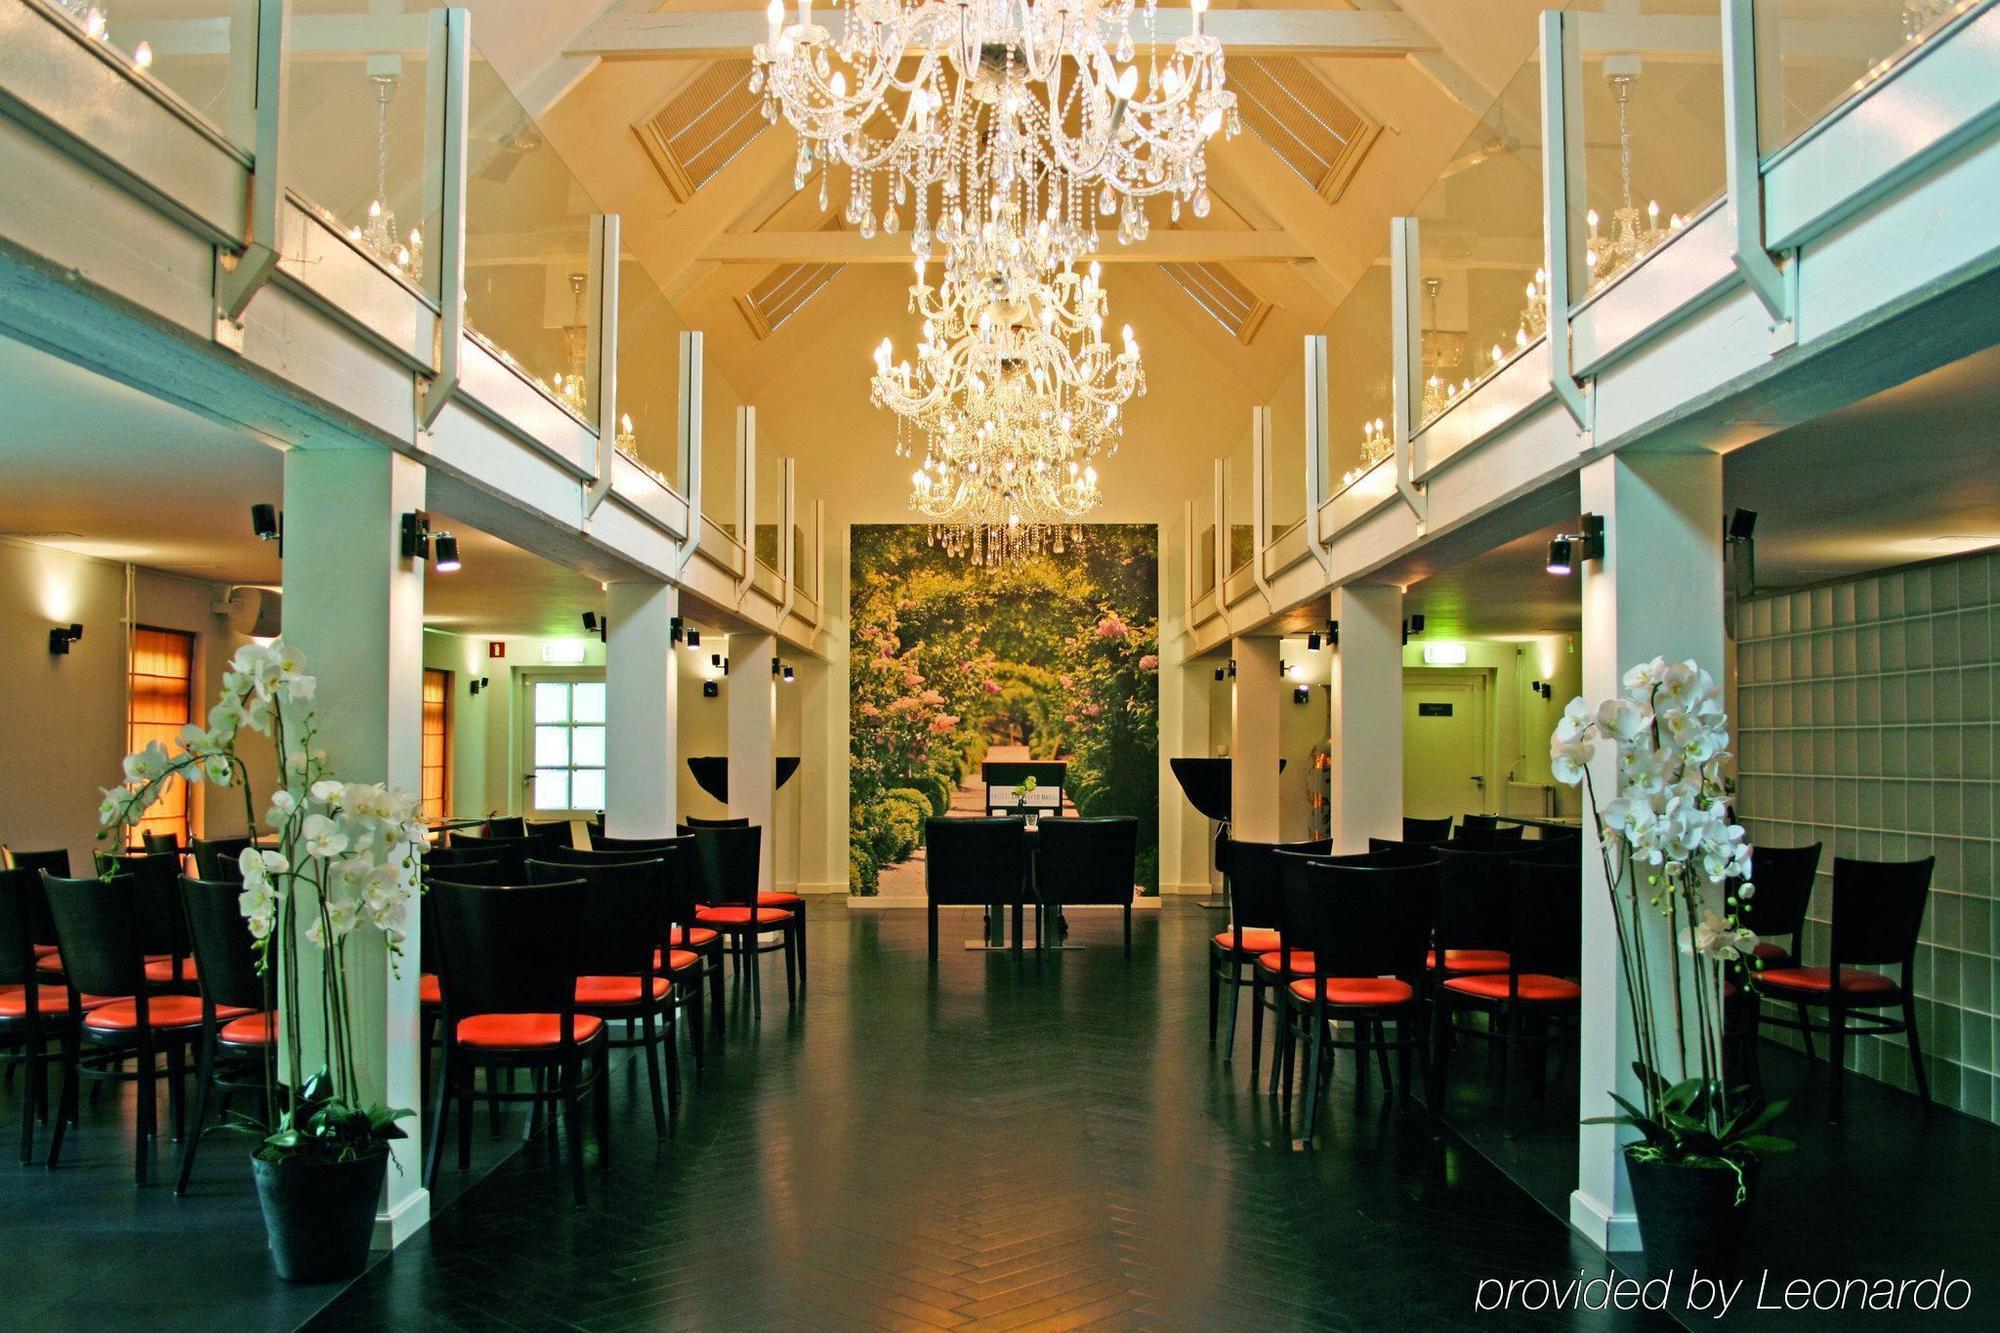 Fletcher Hotel-Restaurant de Witte Brug Lekkerkerk Extérieur photo